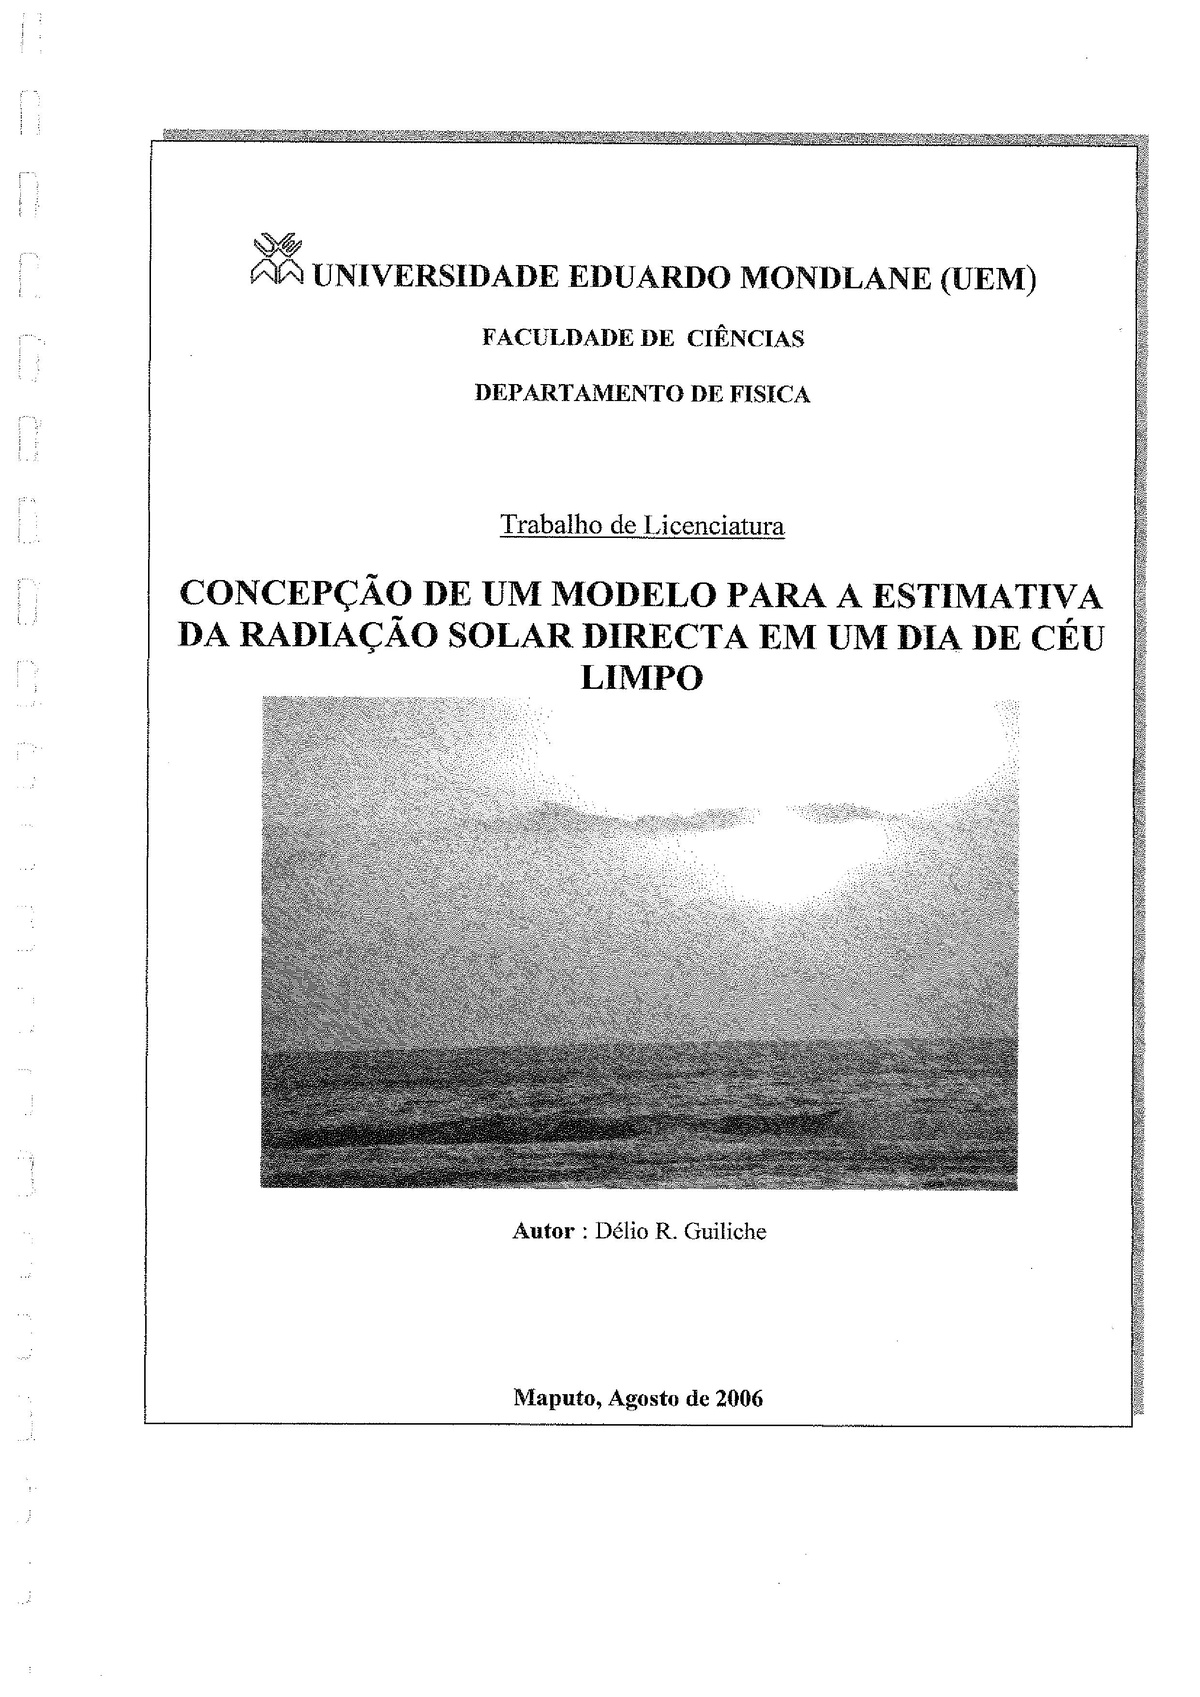 File:PT-Concepcao de um modelo para a estimativa da radiacao solar directa  em um dia de céu aberto-Délio R.  - energypedia